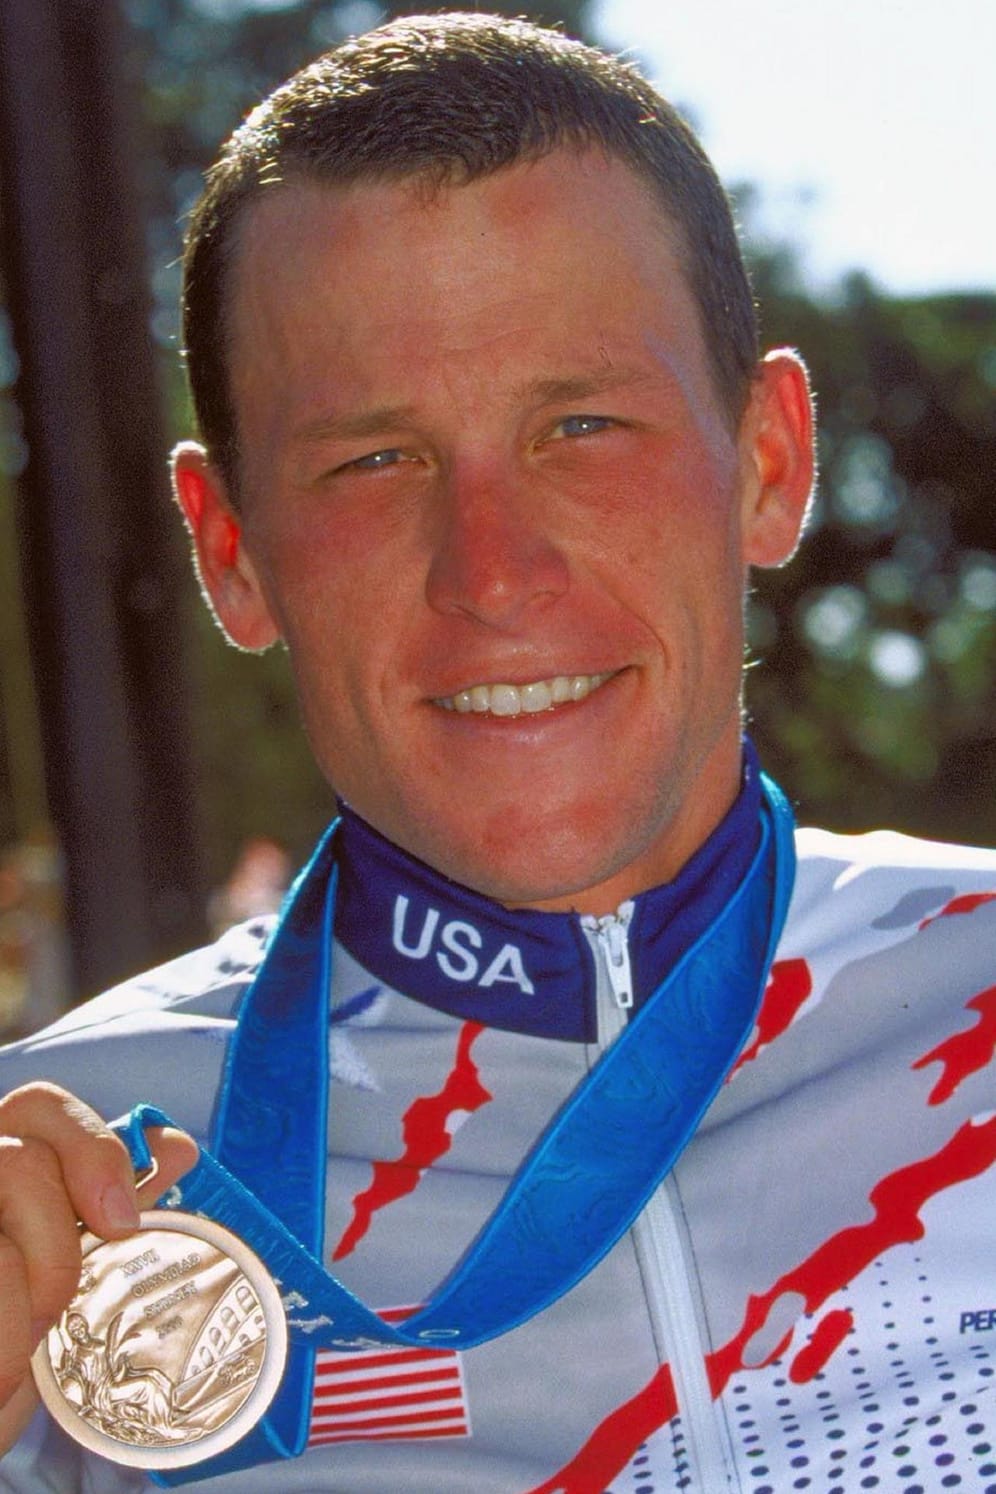 Lance Armstrong (2000): Ullrichs ehemaliger Konkurrent und heutiger guter Freund gewann die Tour de France sieben Mal hintereinander. 1999 bis 2005 konnte er sich jährlich Gold sichern. Nach einer Pause kehrte Armstrong 2009 zum Profi-Radsport zurück. 2011 beendete er seine Radsportkarriere und widmete sich stattdessen dem Triathlon-Lauf.